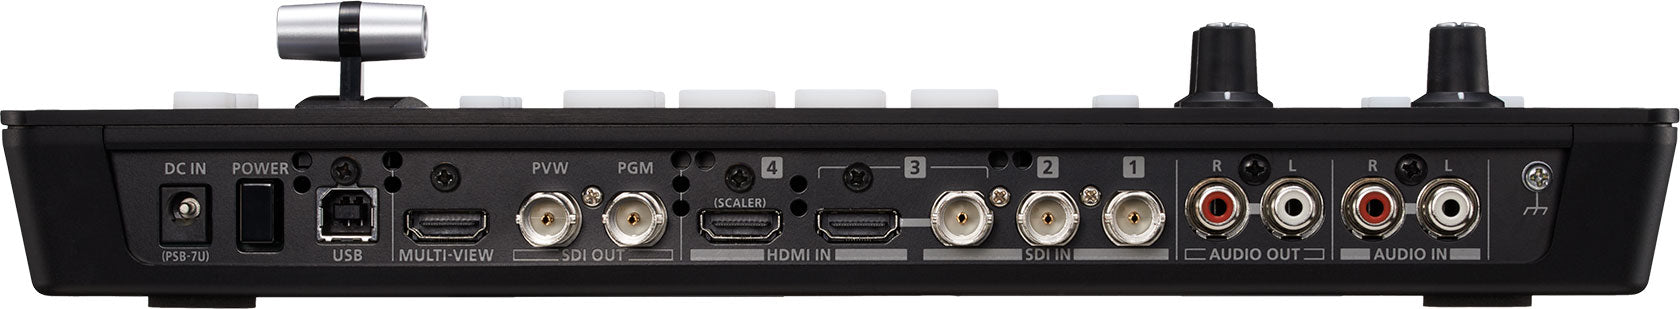 Roland V-1SDI | 3G-SDI Video Switcher